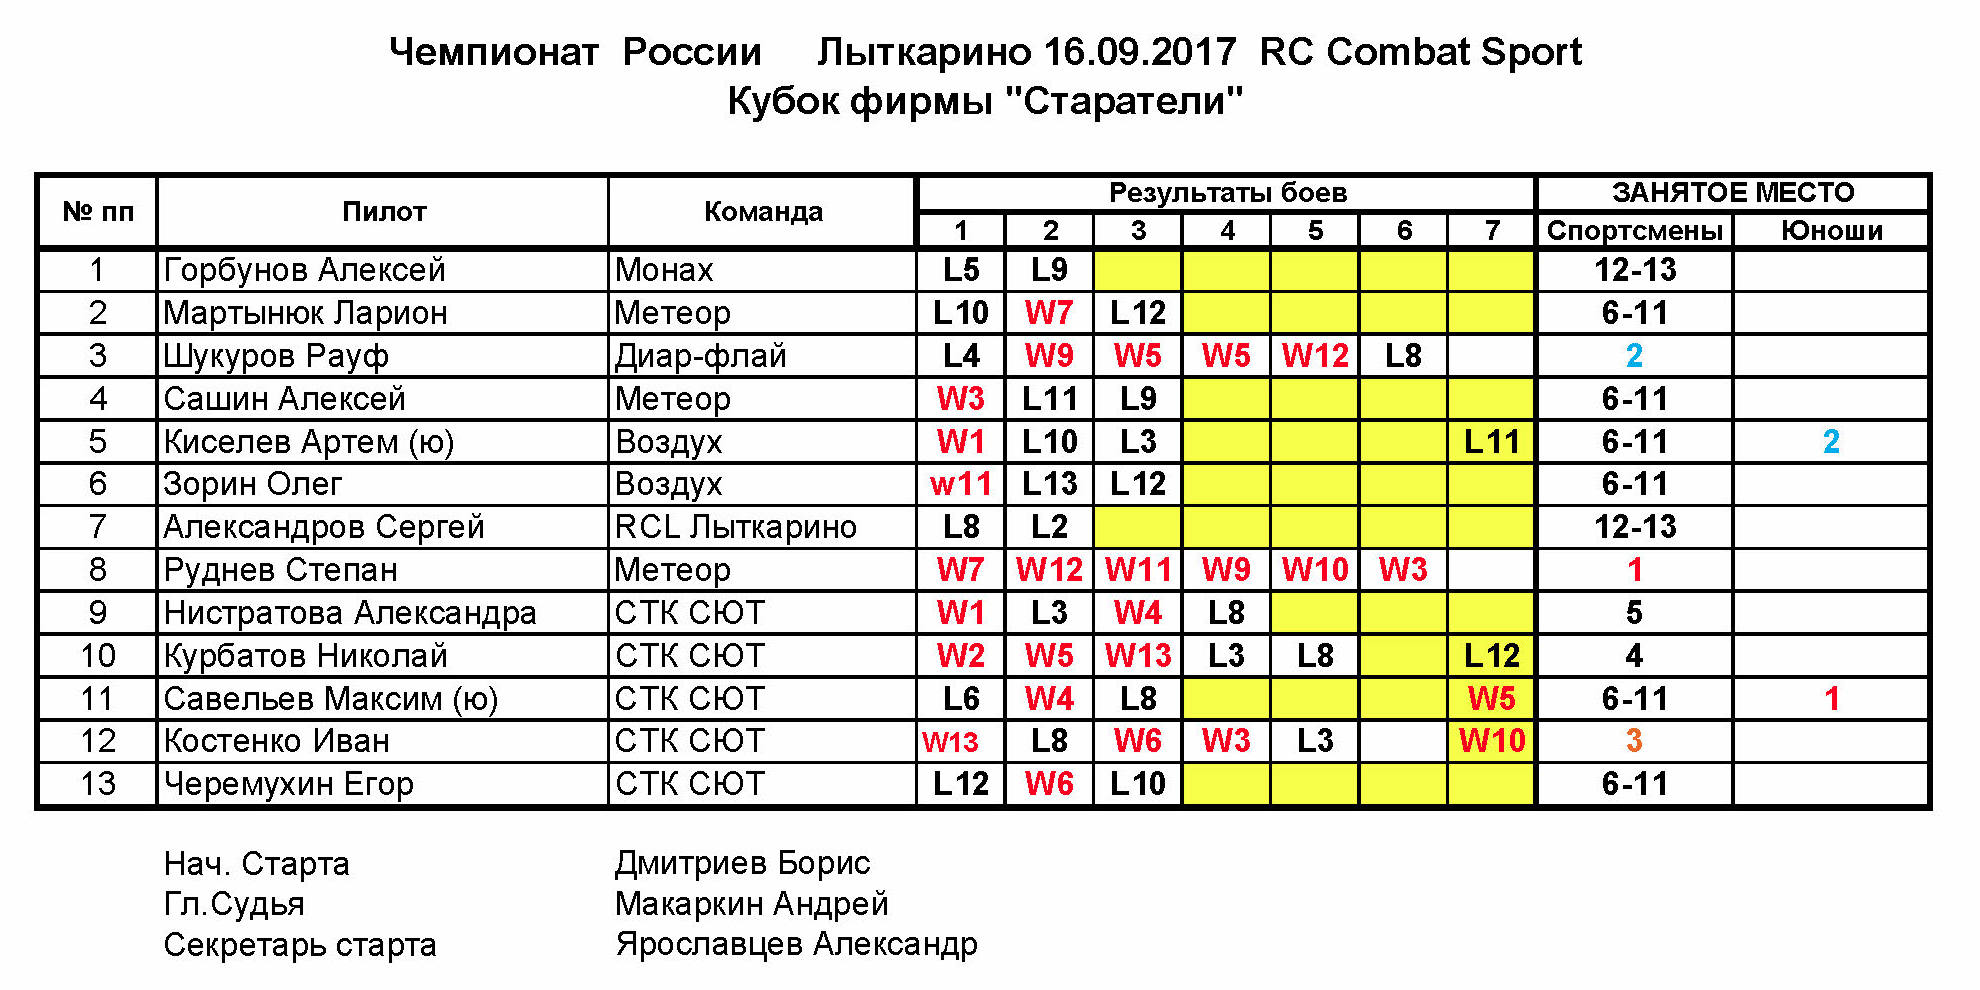 "ЧР Комбат-Спорт 2017 (Лыткарино, 16 сентября 2017)